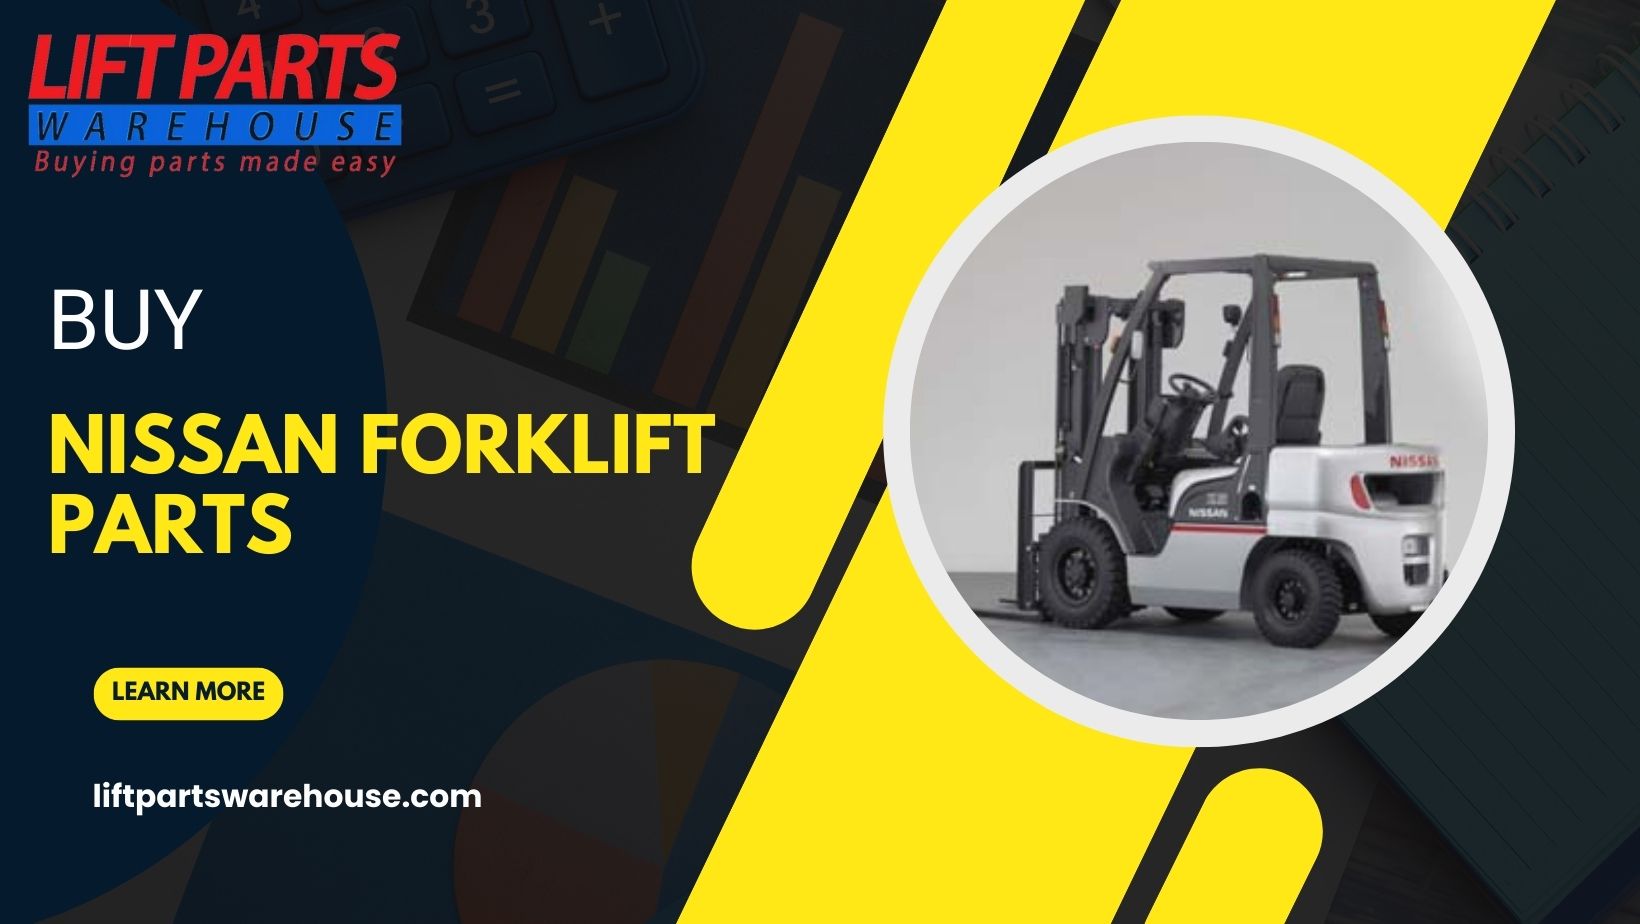 Forklift Parts for Sale